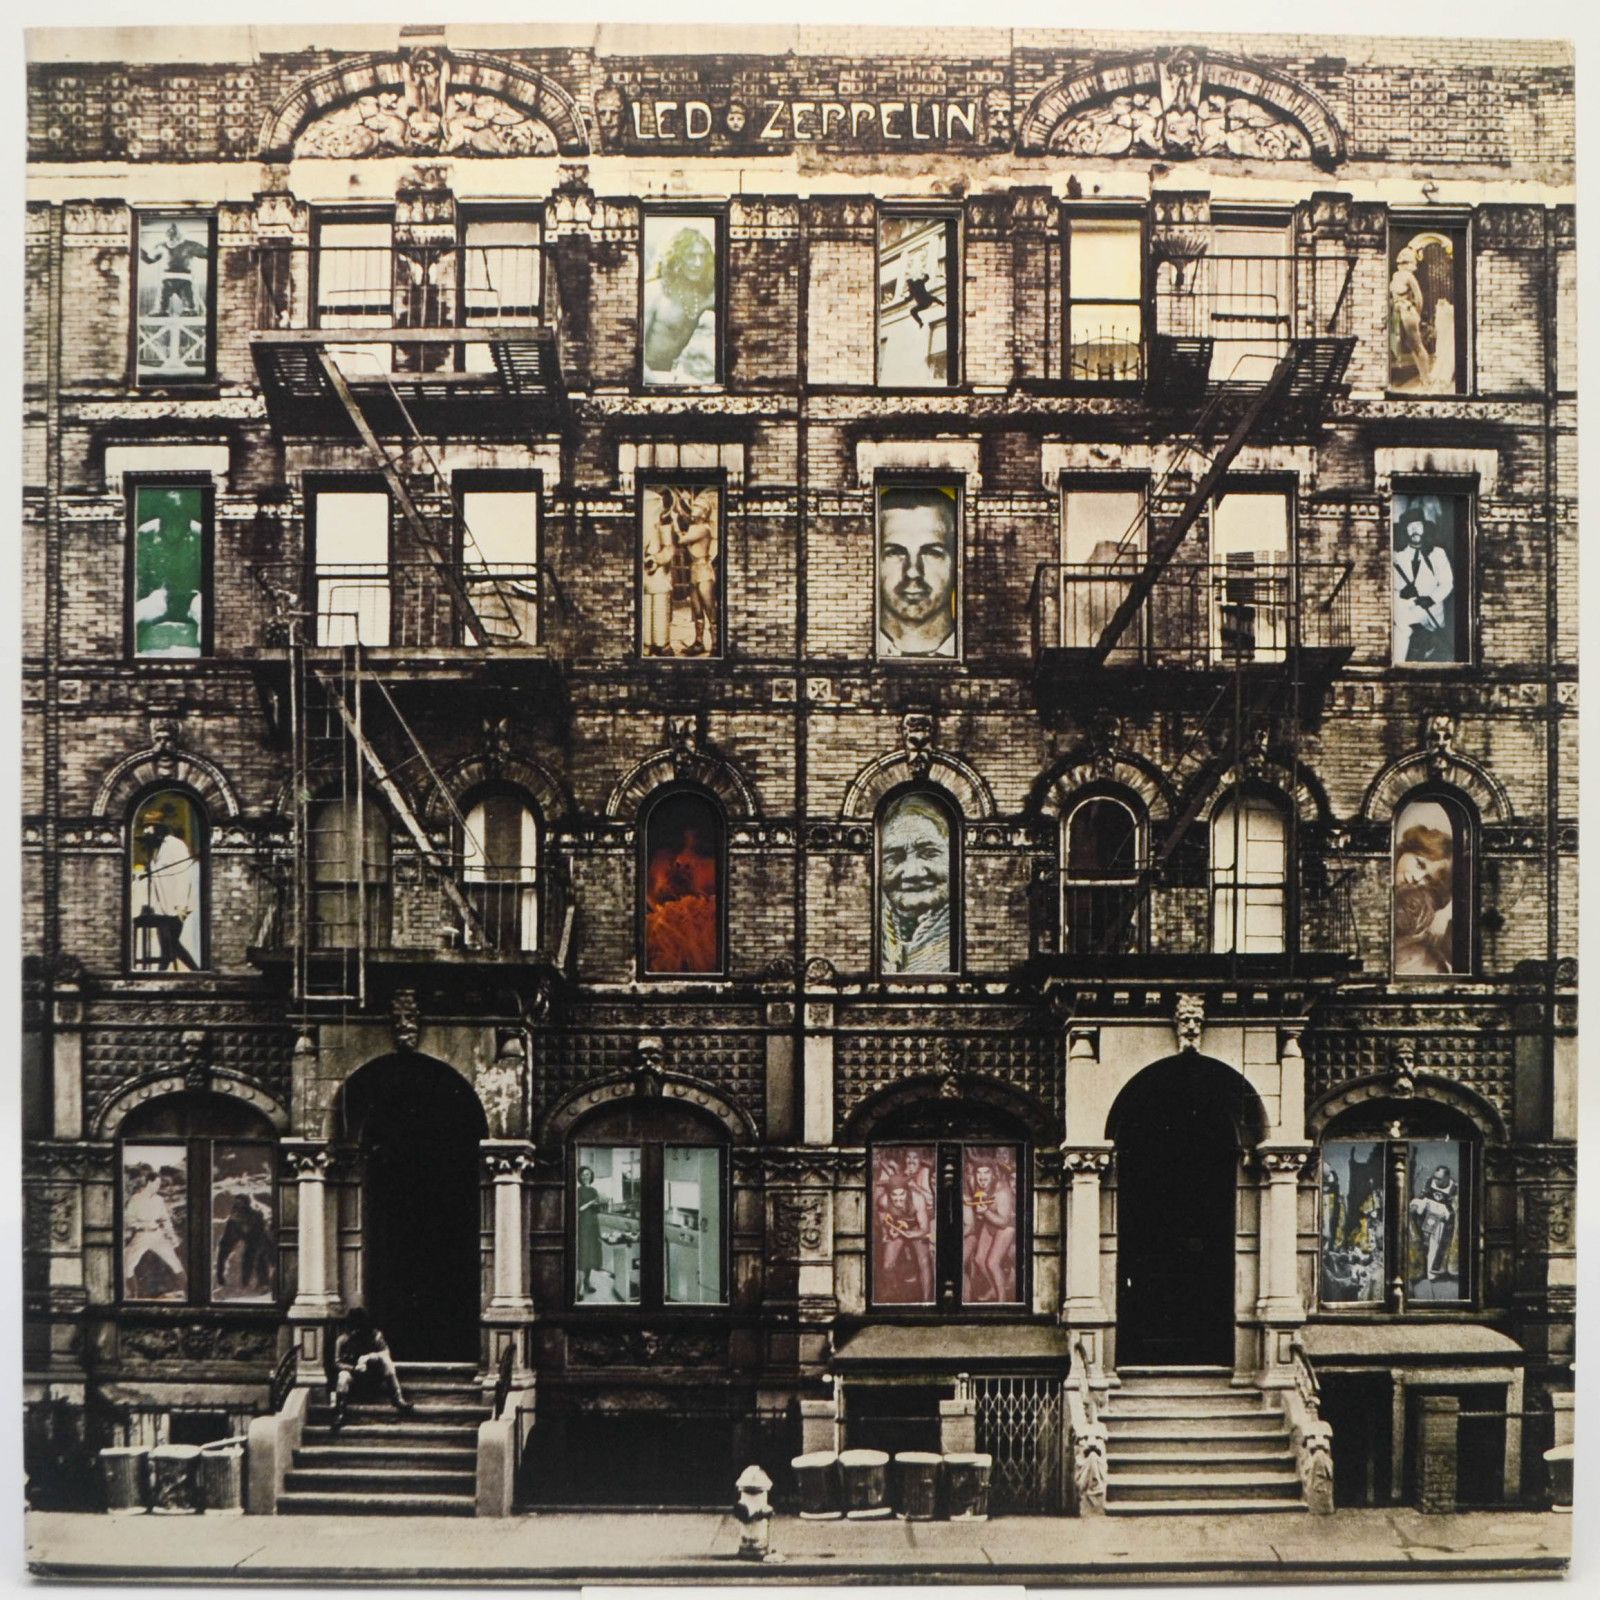 Led Zeppelin — Physical Graffiti (2LP), 1975